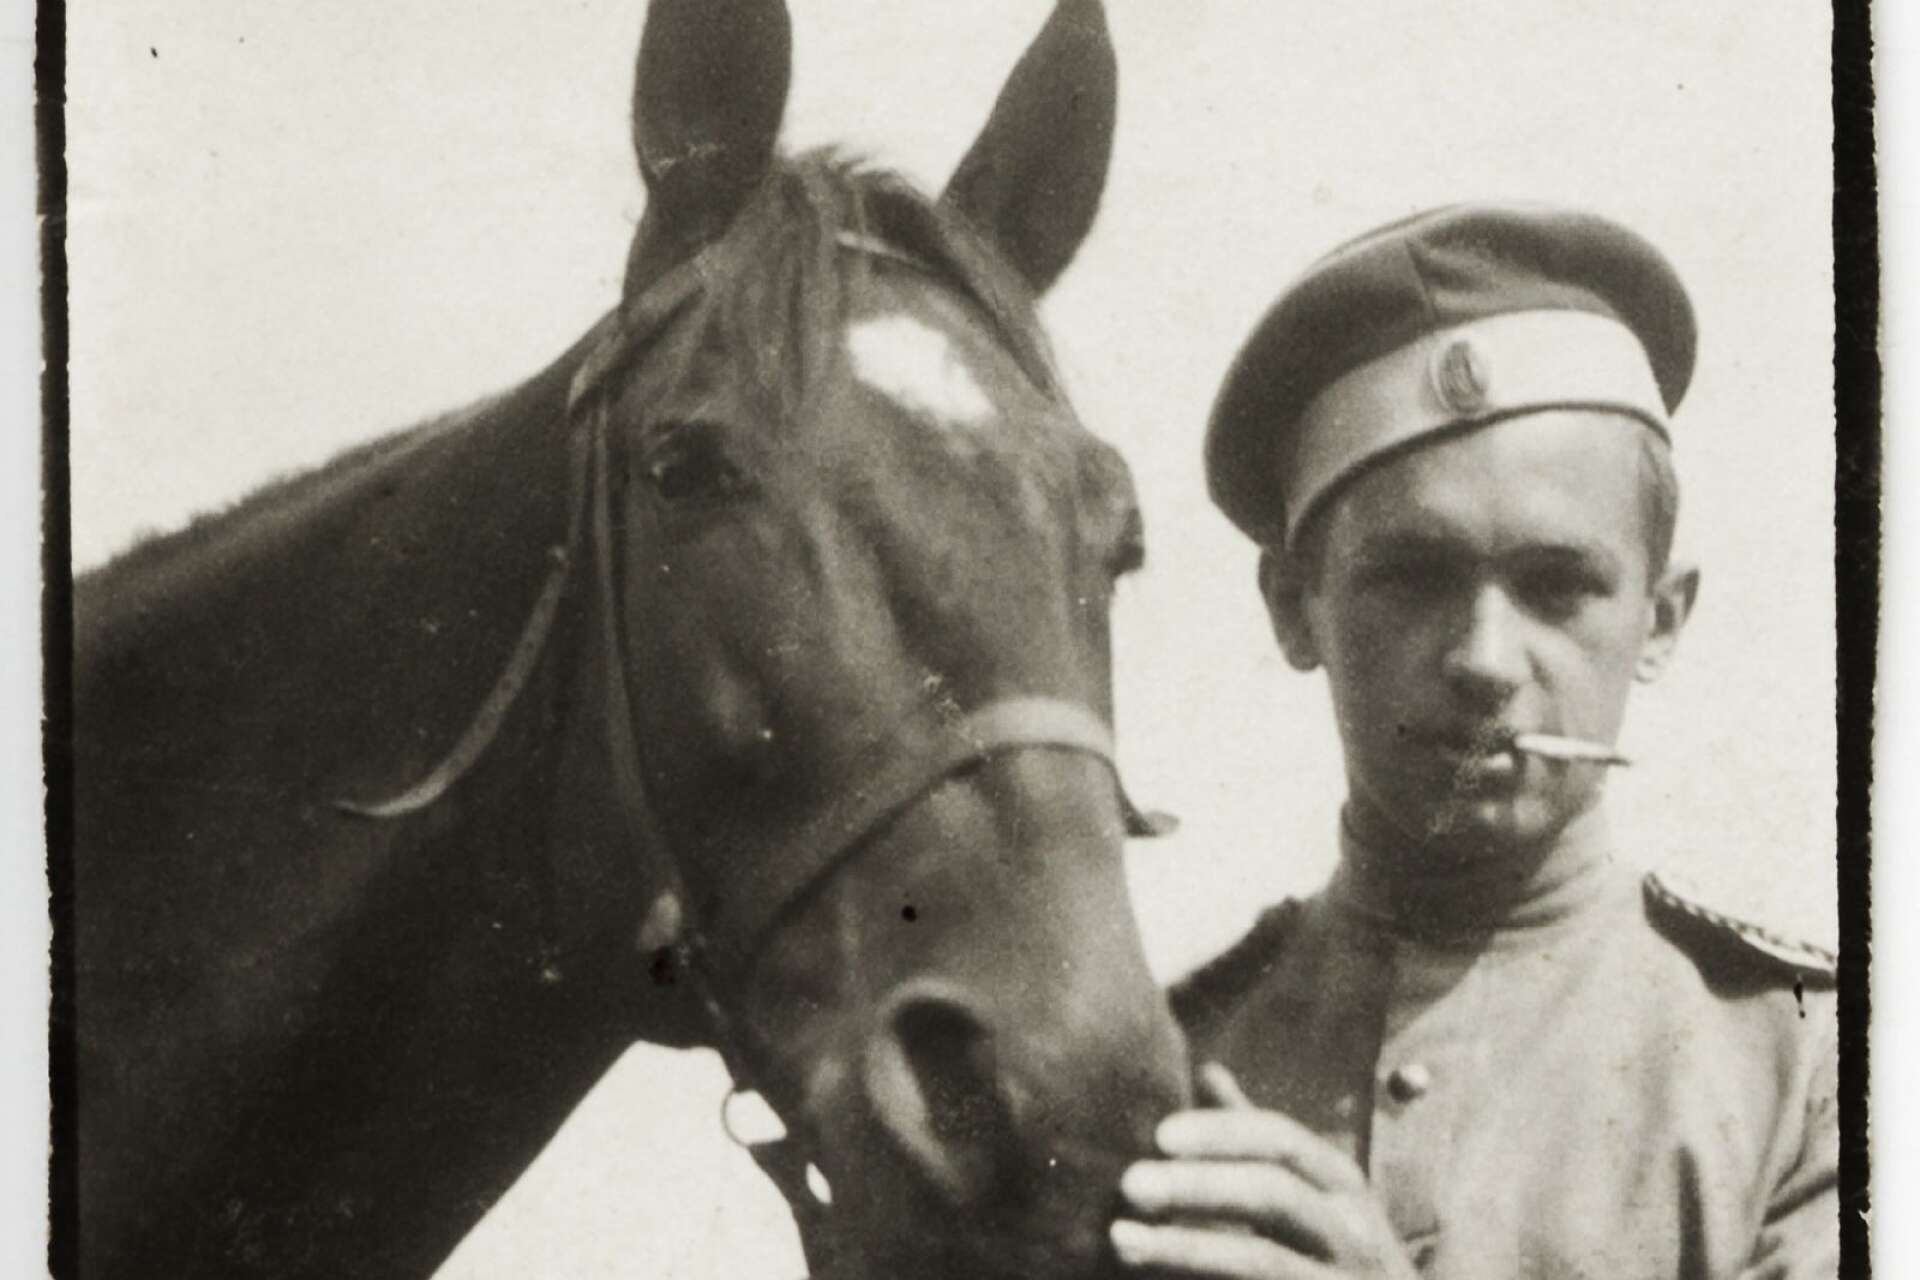 Jāzeps Grosvalds överlevde första världskriget och en militärexpedition i Mellanöstern, men dog bara 28 år gammal. Dåtidens pandemi spanska sjukan tog hans liv.